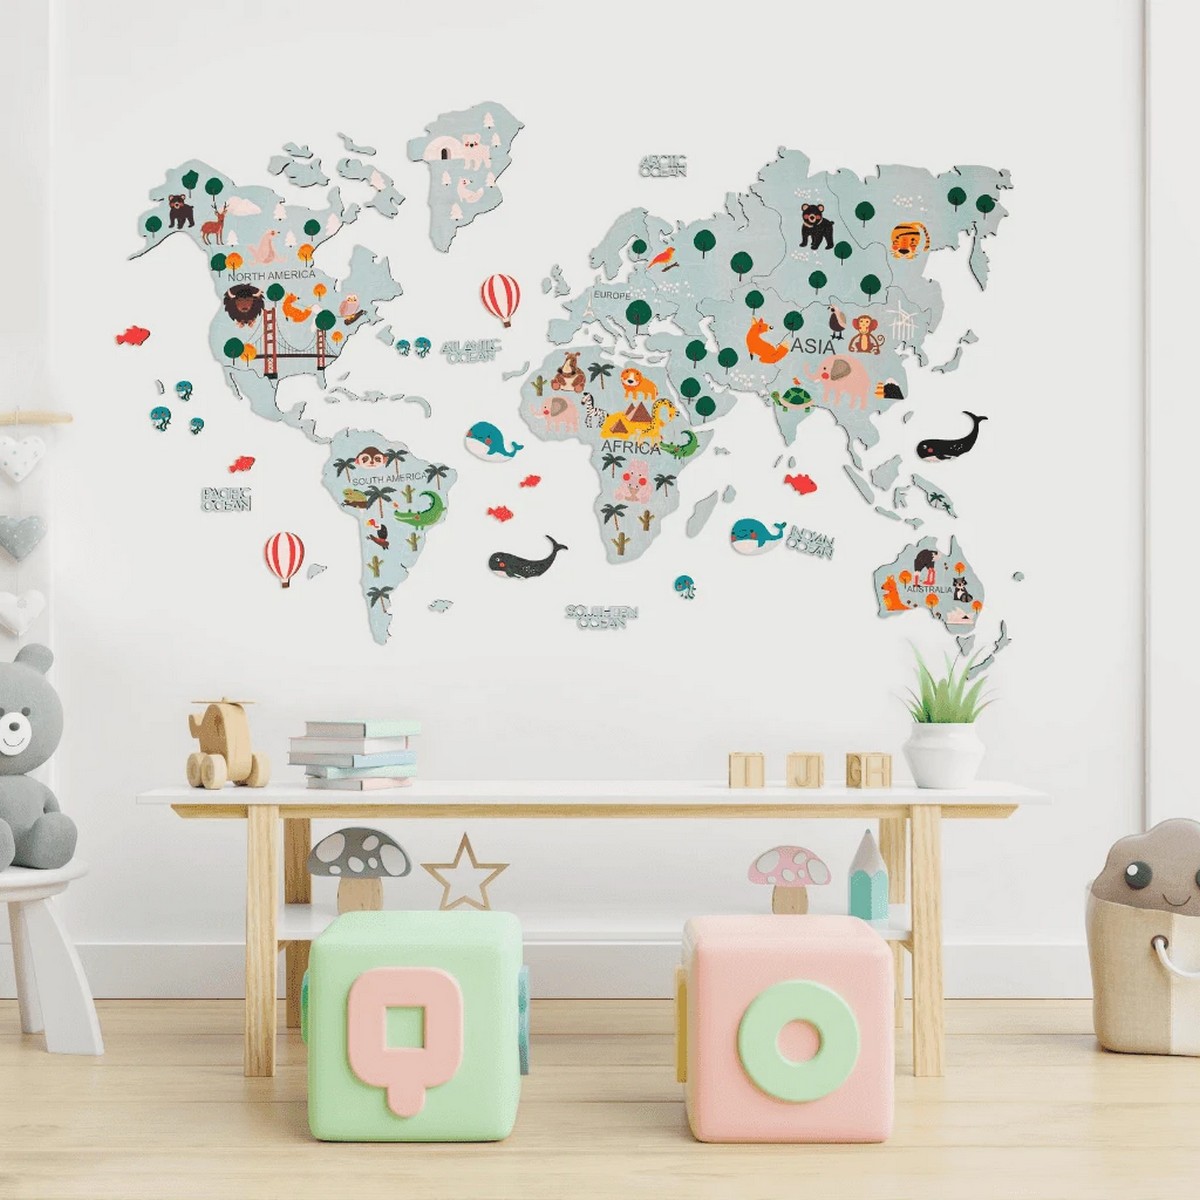 bản đồ thế giới bằng gỗ cho trẻ em trên tường